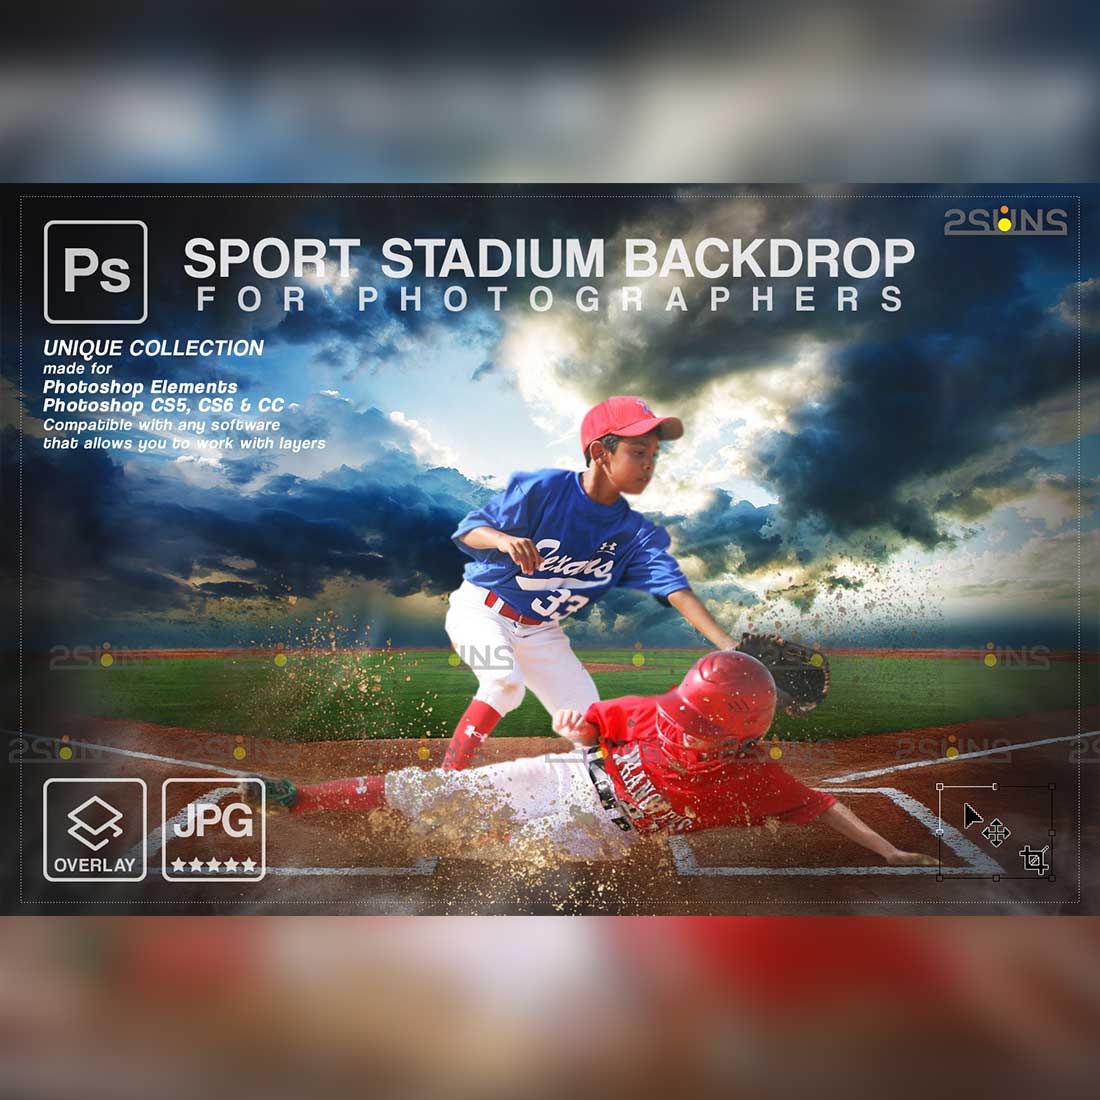 Baseball Stylish Backdrop Sports Digital Background Cover Image.